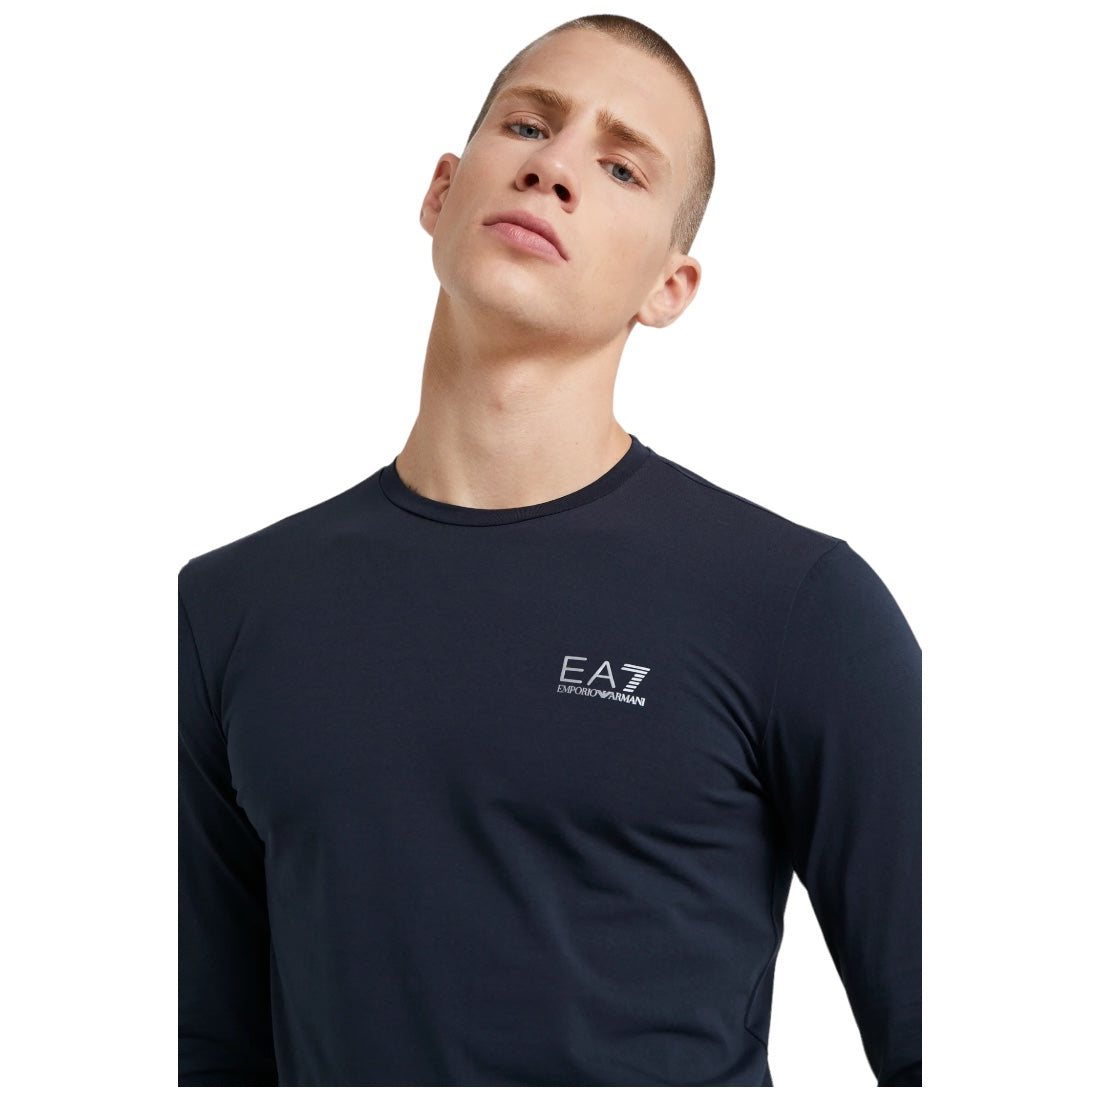 EA7 Emporio Armani pitkähihainen T-paita